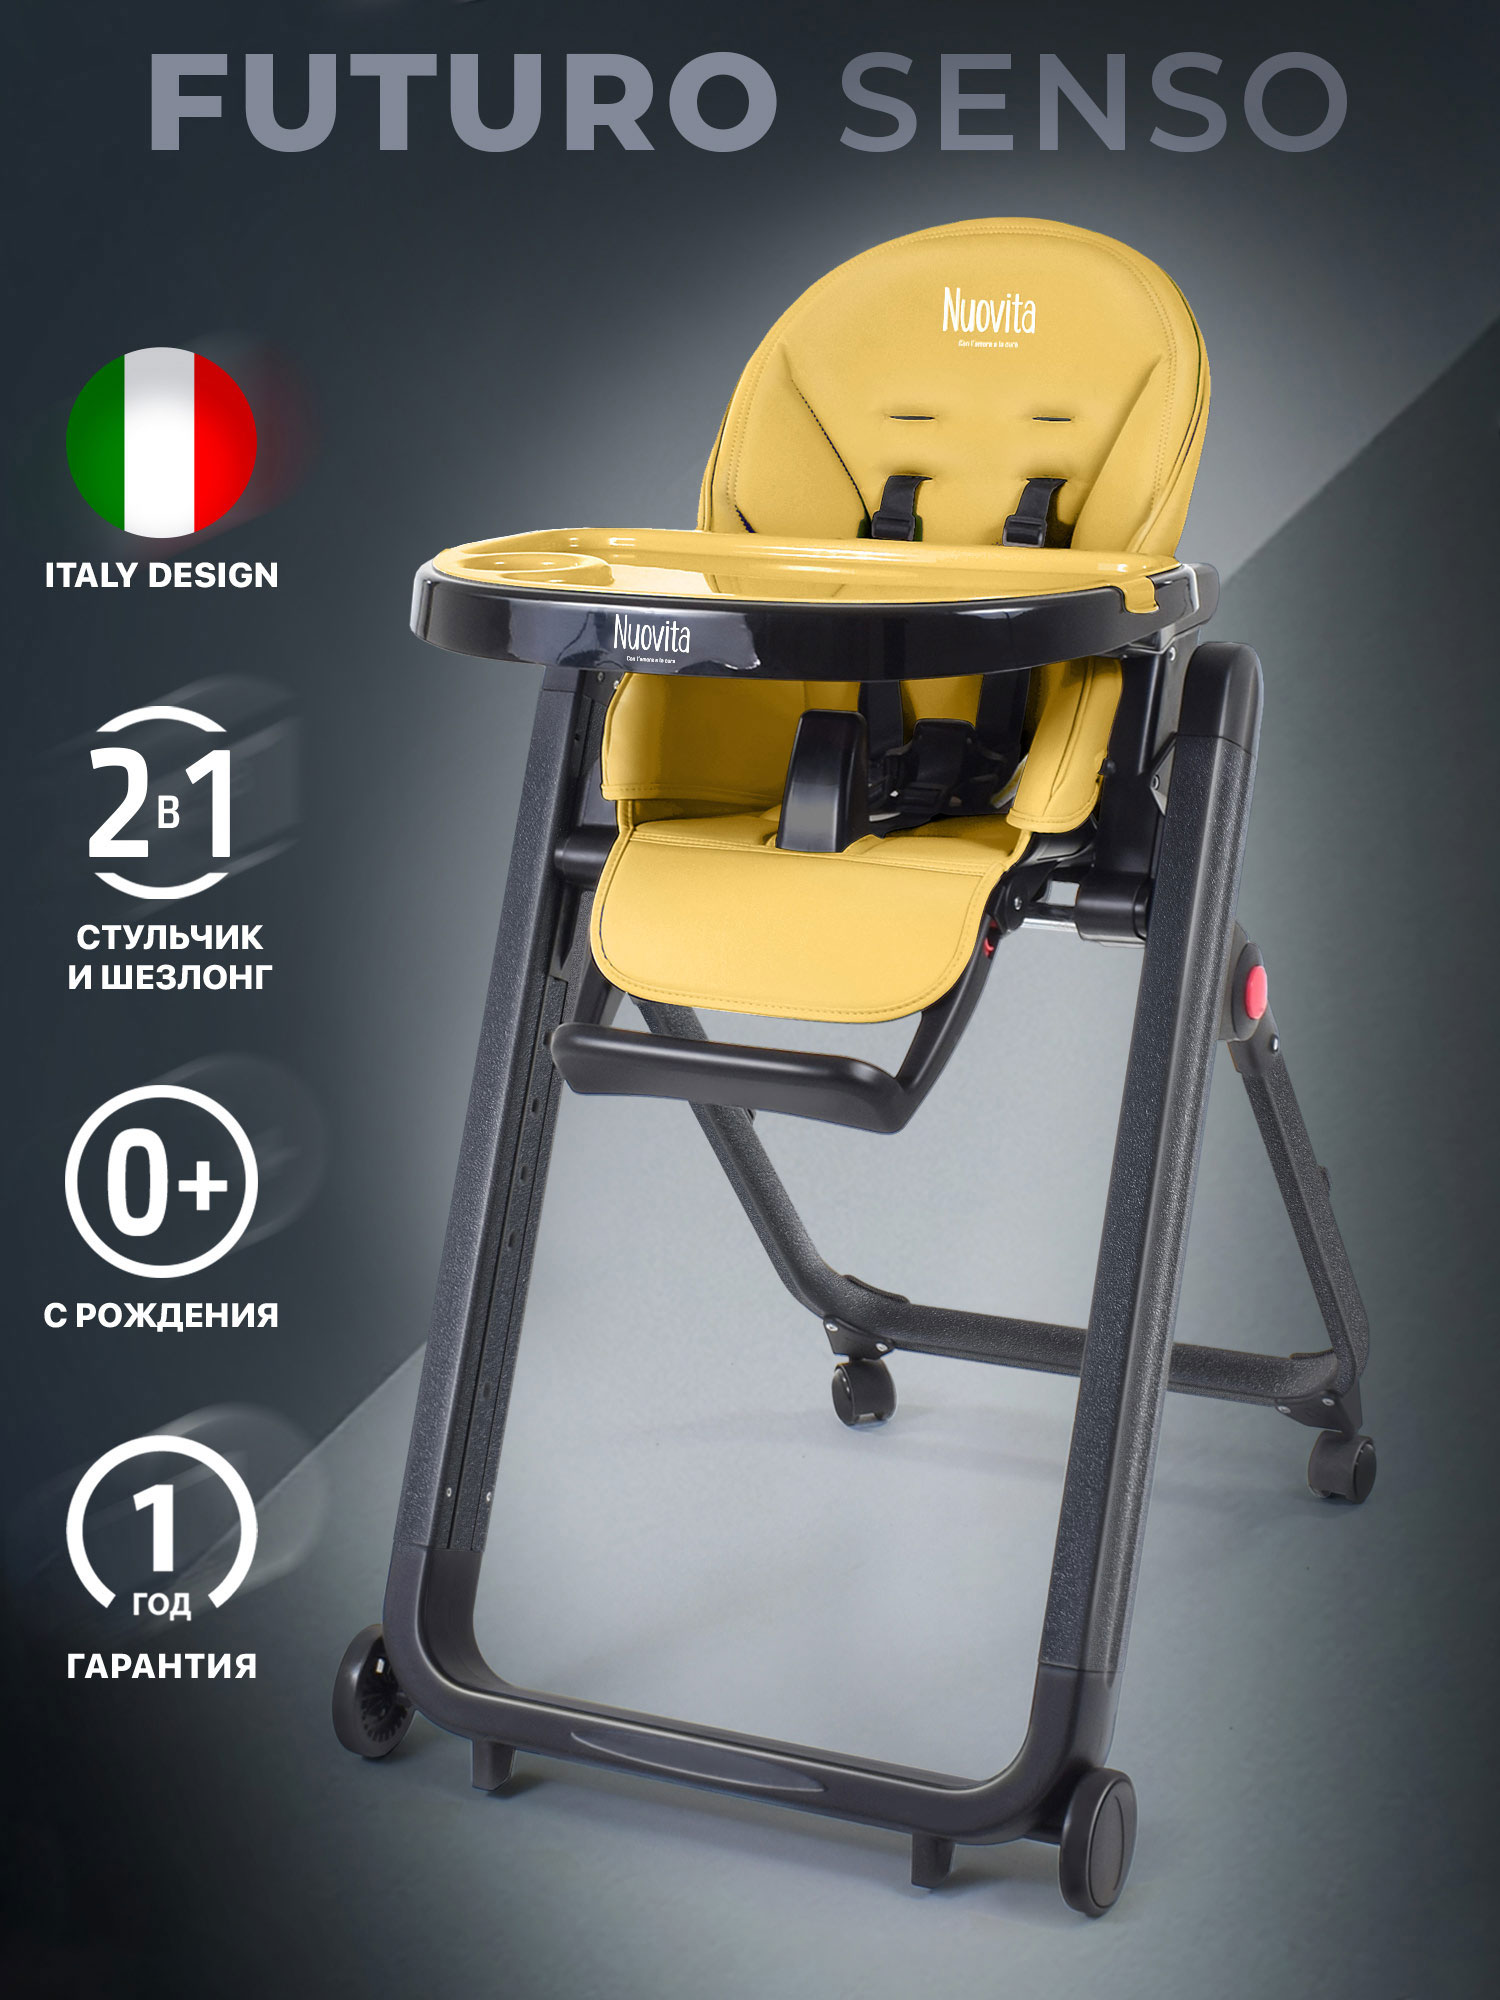 Стульчик для кормления Nuovita Futuro Senso Nero (Giallo/Желтый) стульчик для кормления nuovita futuro 2 в 1